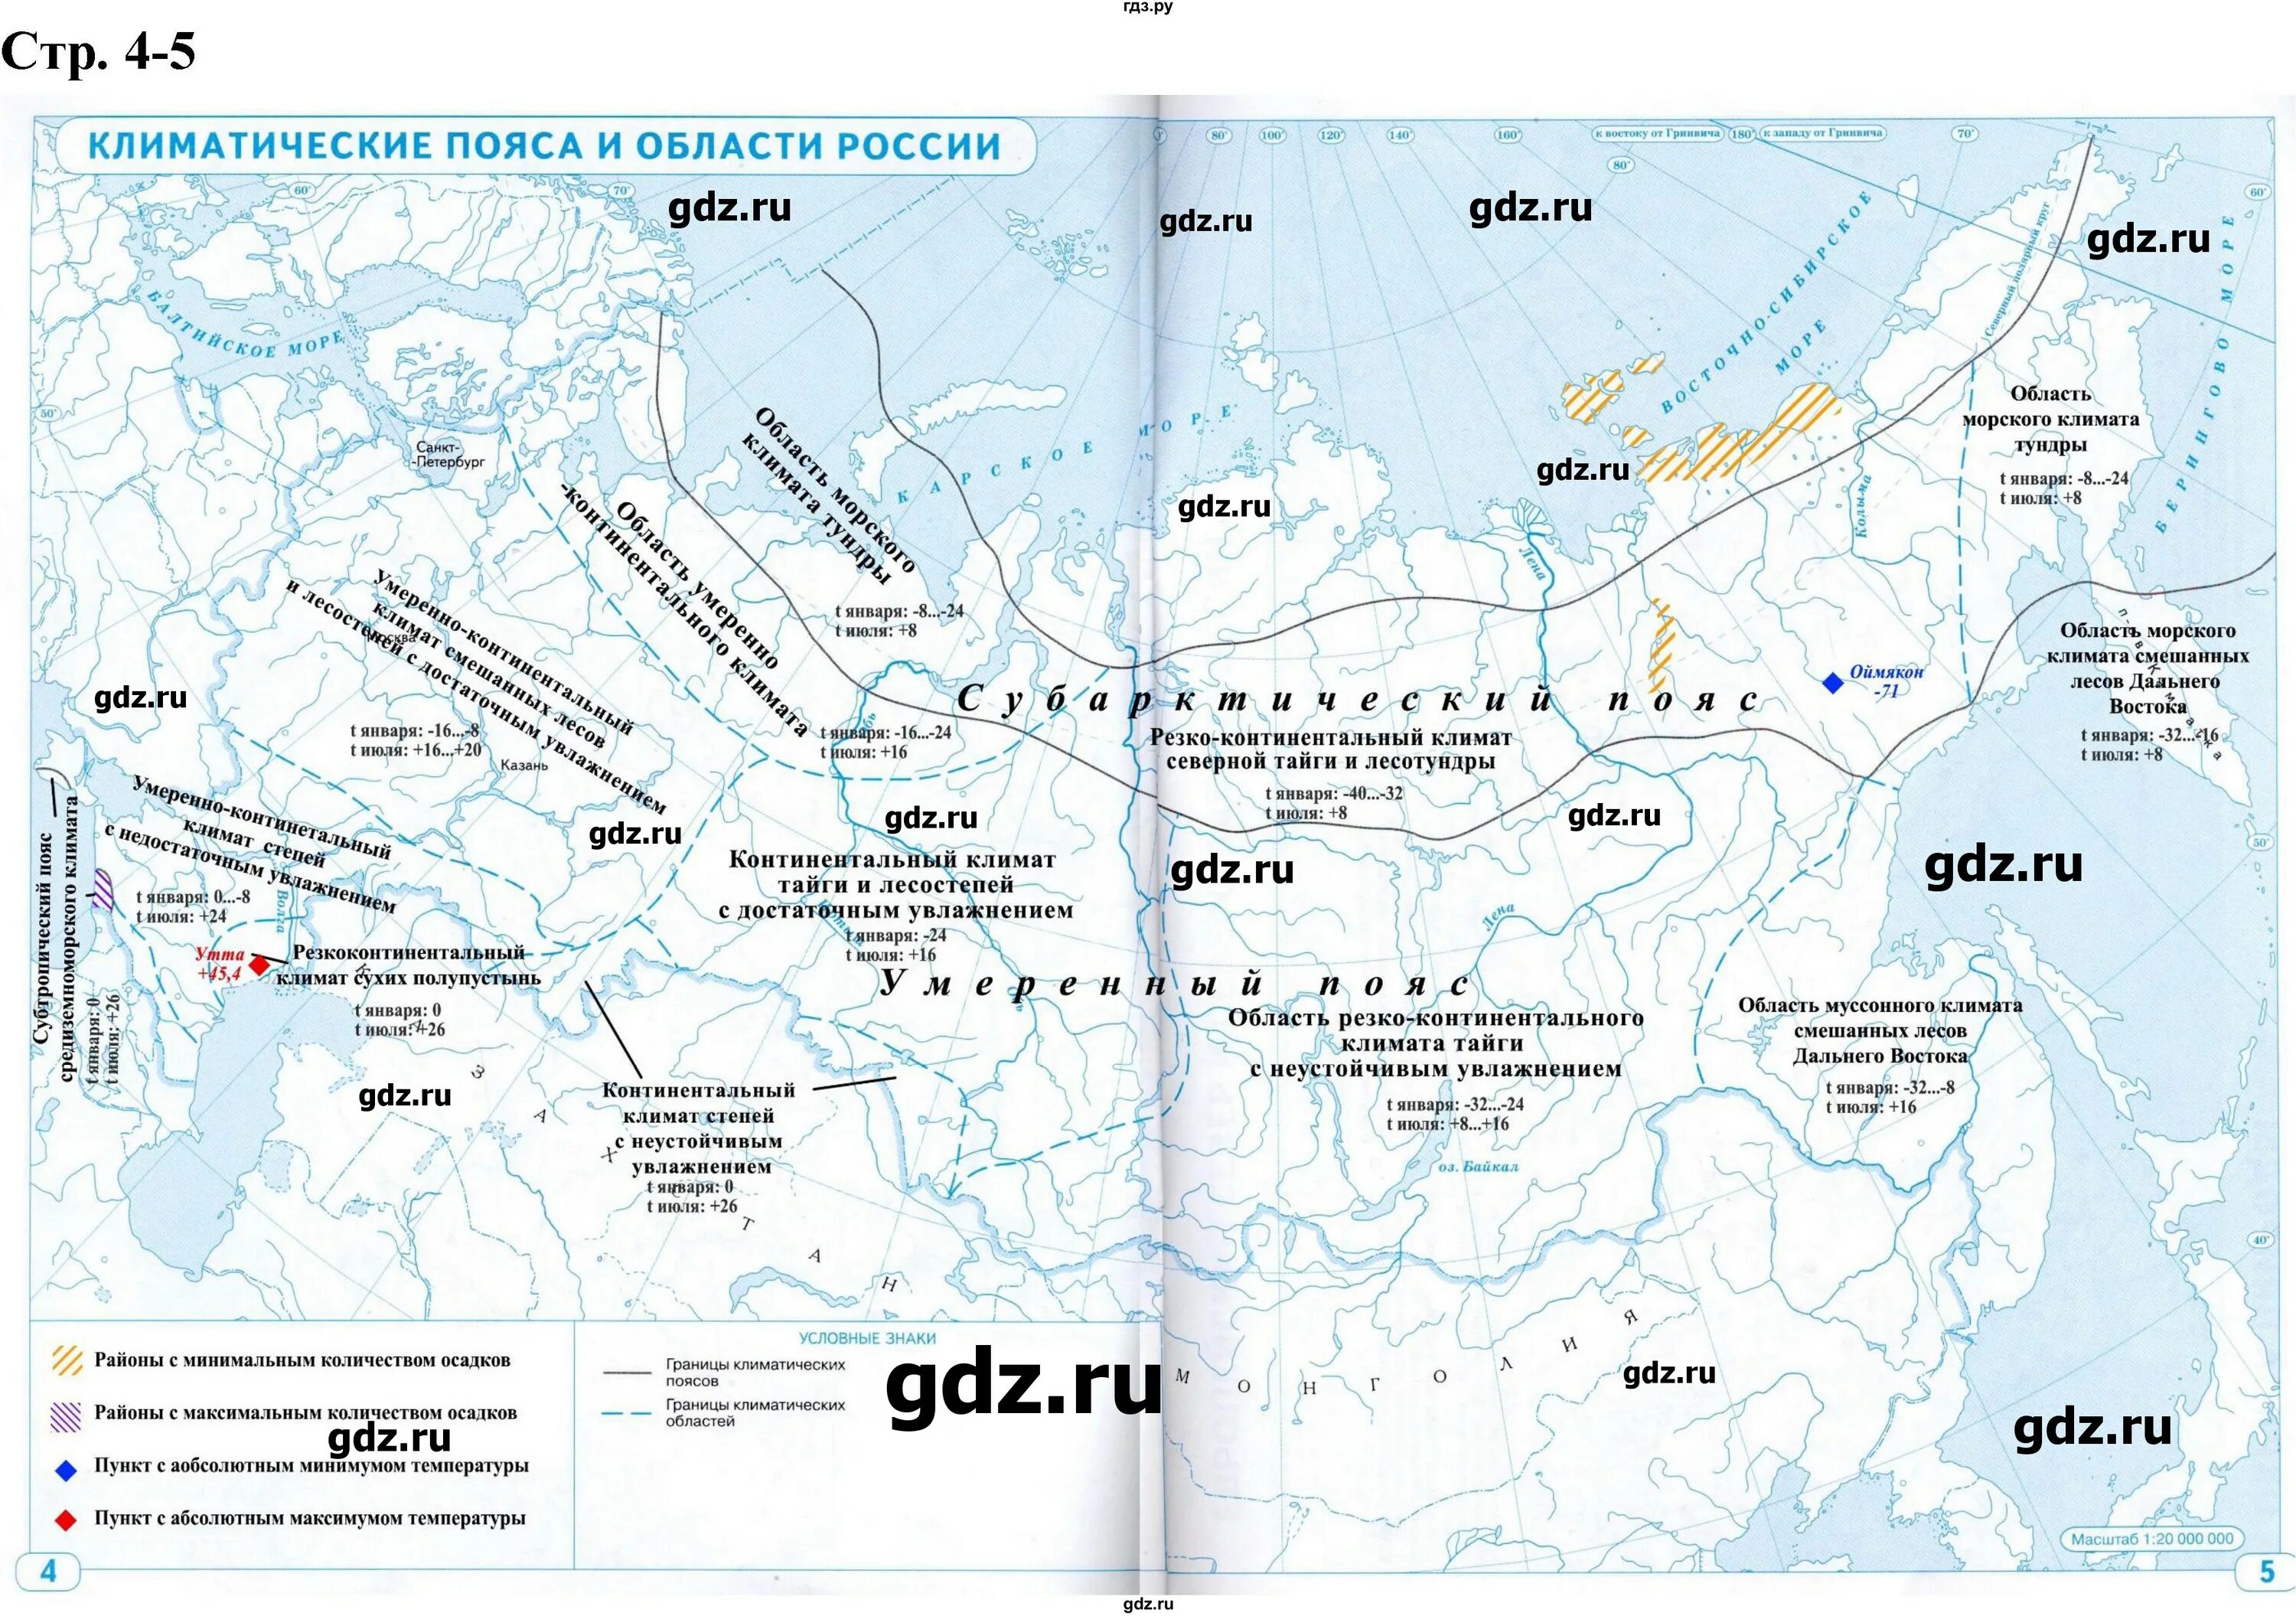 Контурная карта России 8 класс география Дрофа. Контурная карта по географии 8 класс Дрофа стр 2-3 ответы.